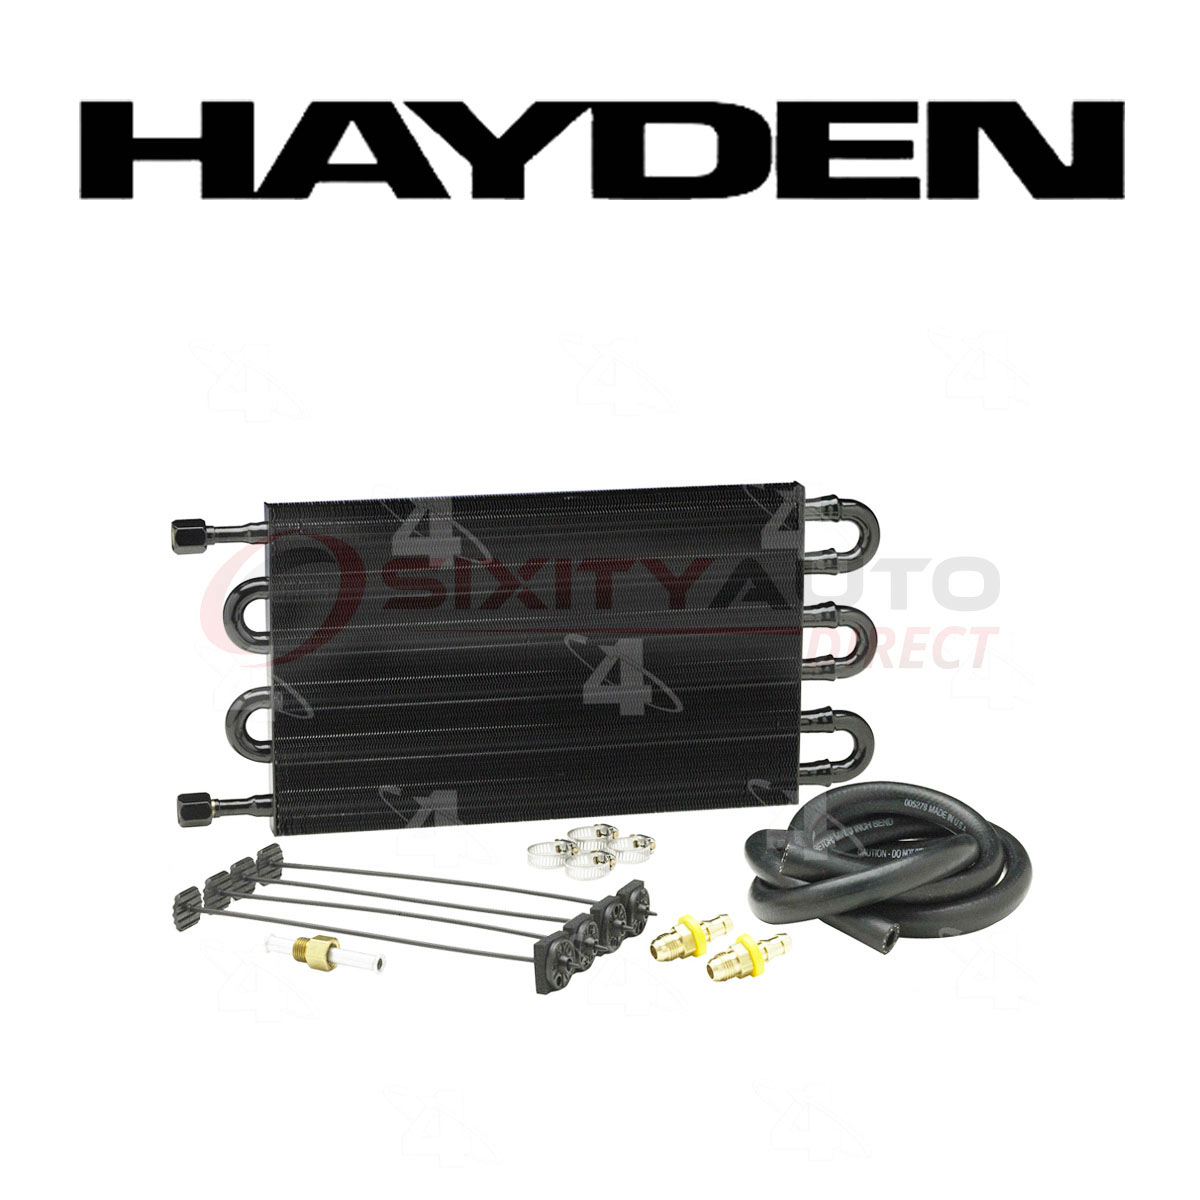 Hayden Transmission Oil Cooler for 2005-2007 Chevrolet Equinox 3.4L V6 - fi | eBay 2005 Chevy Equinox Transmission Oil Cooler Lines